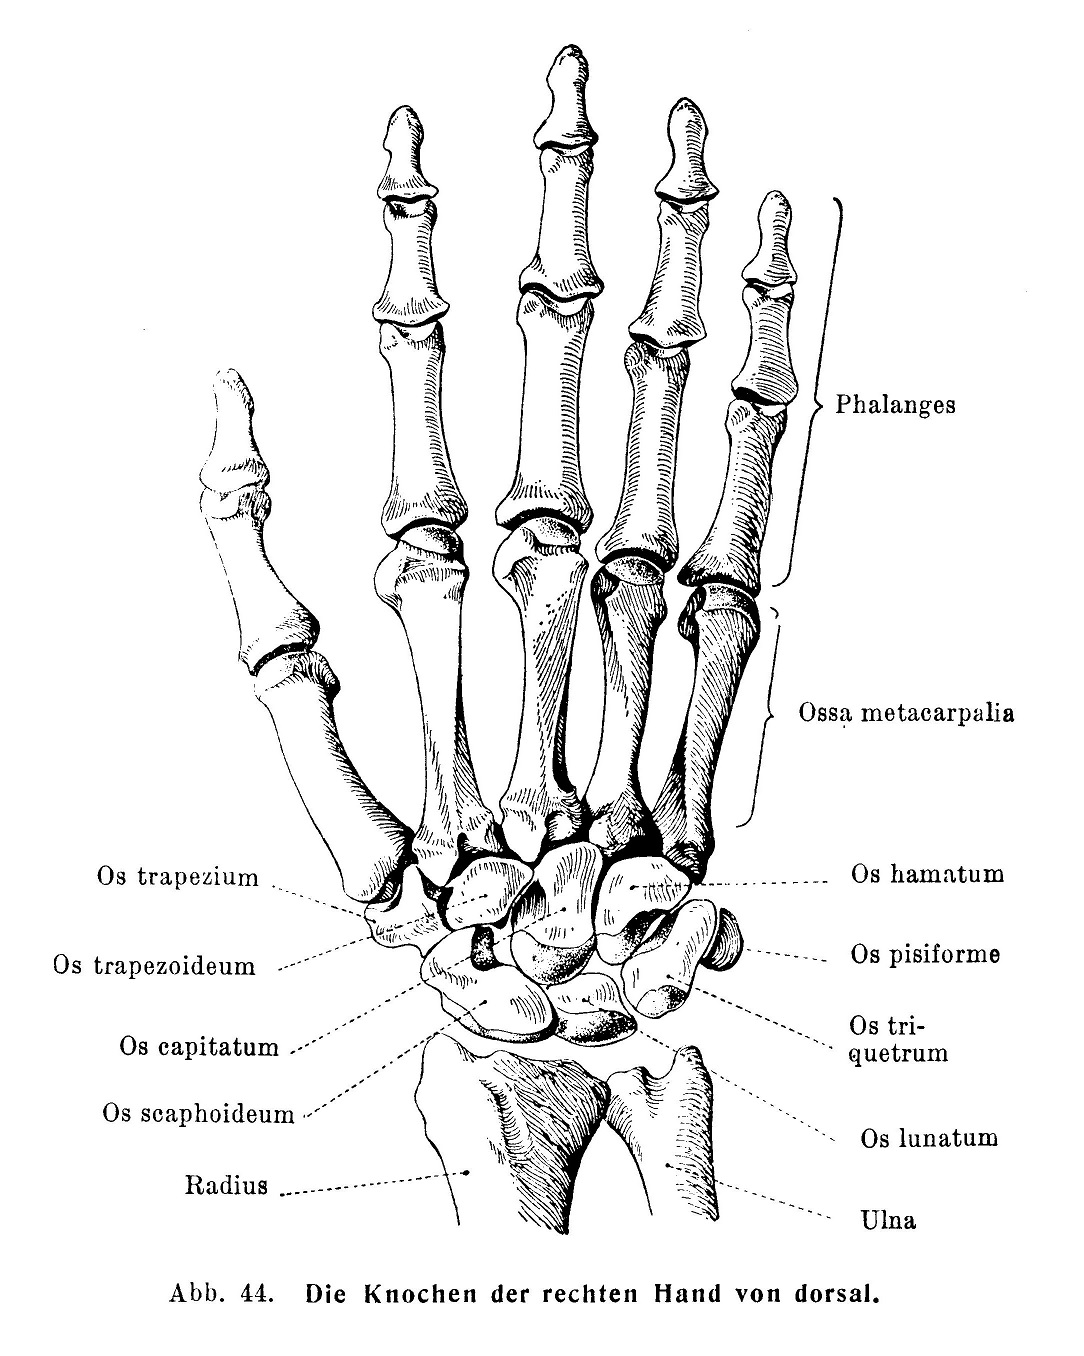 Die Knochen der rechten Hand von dorsal